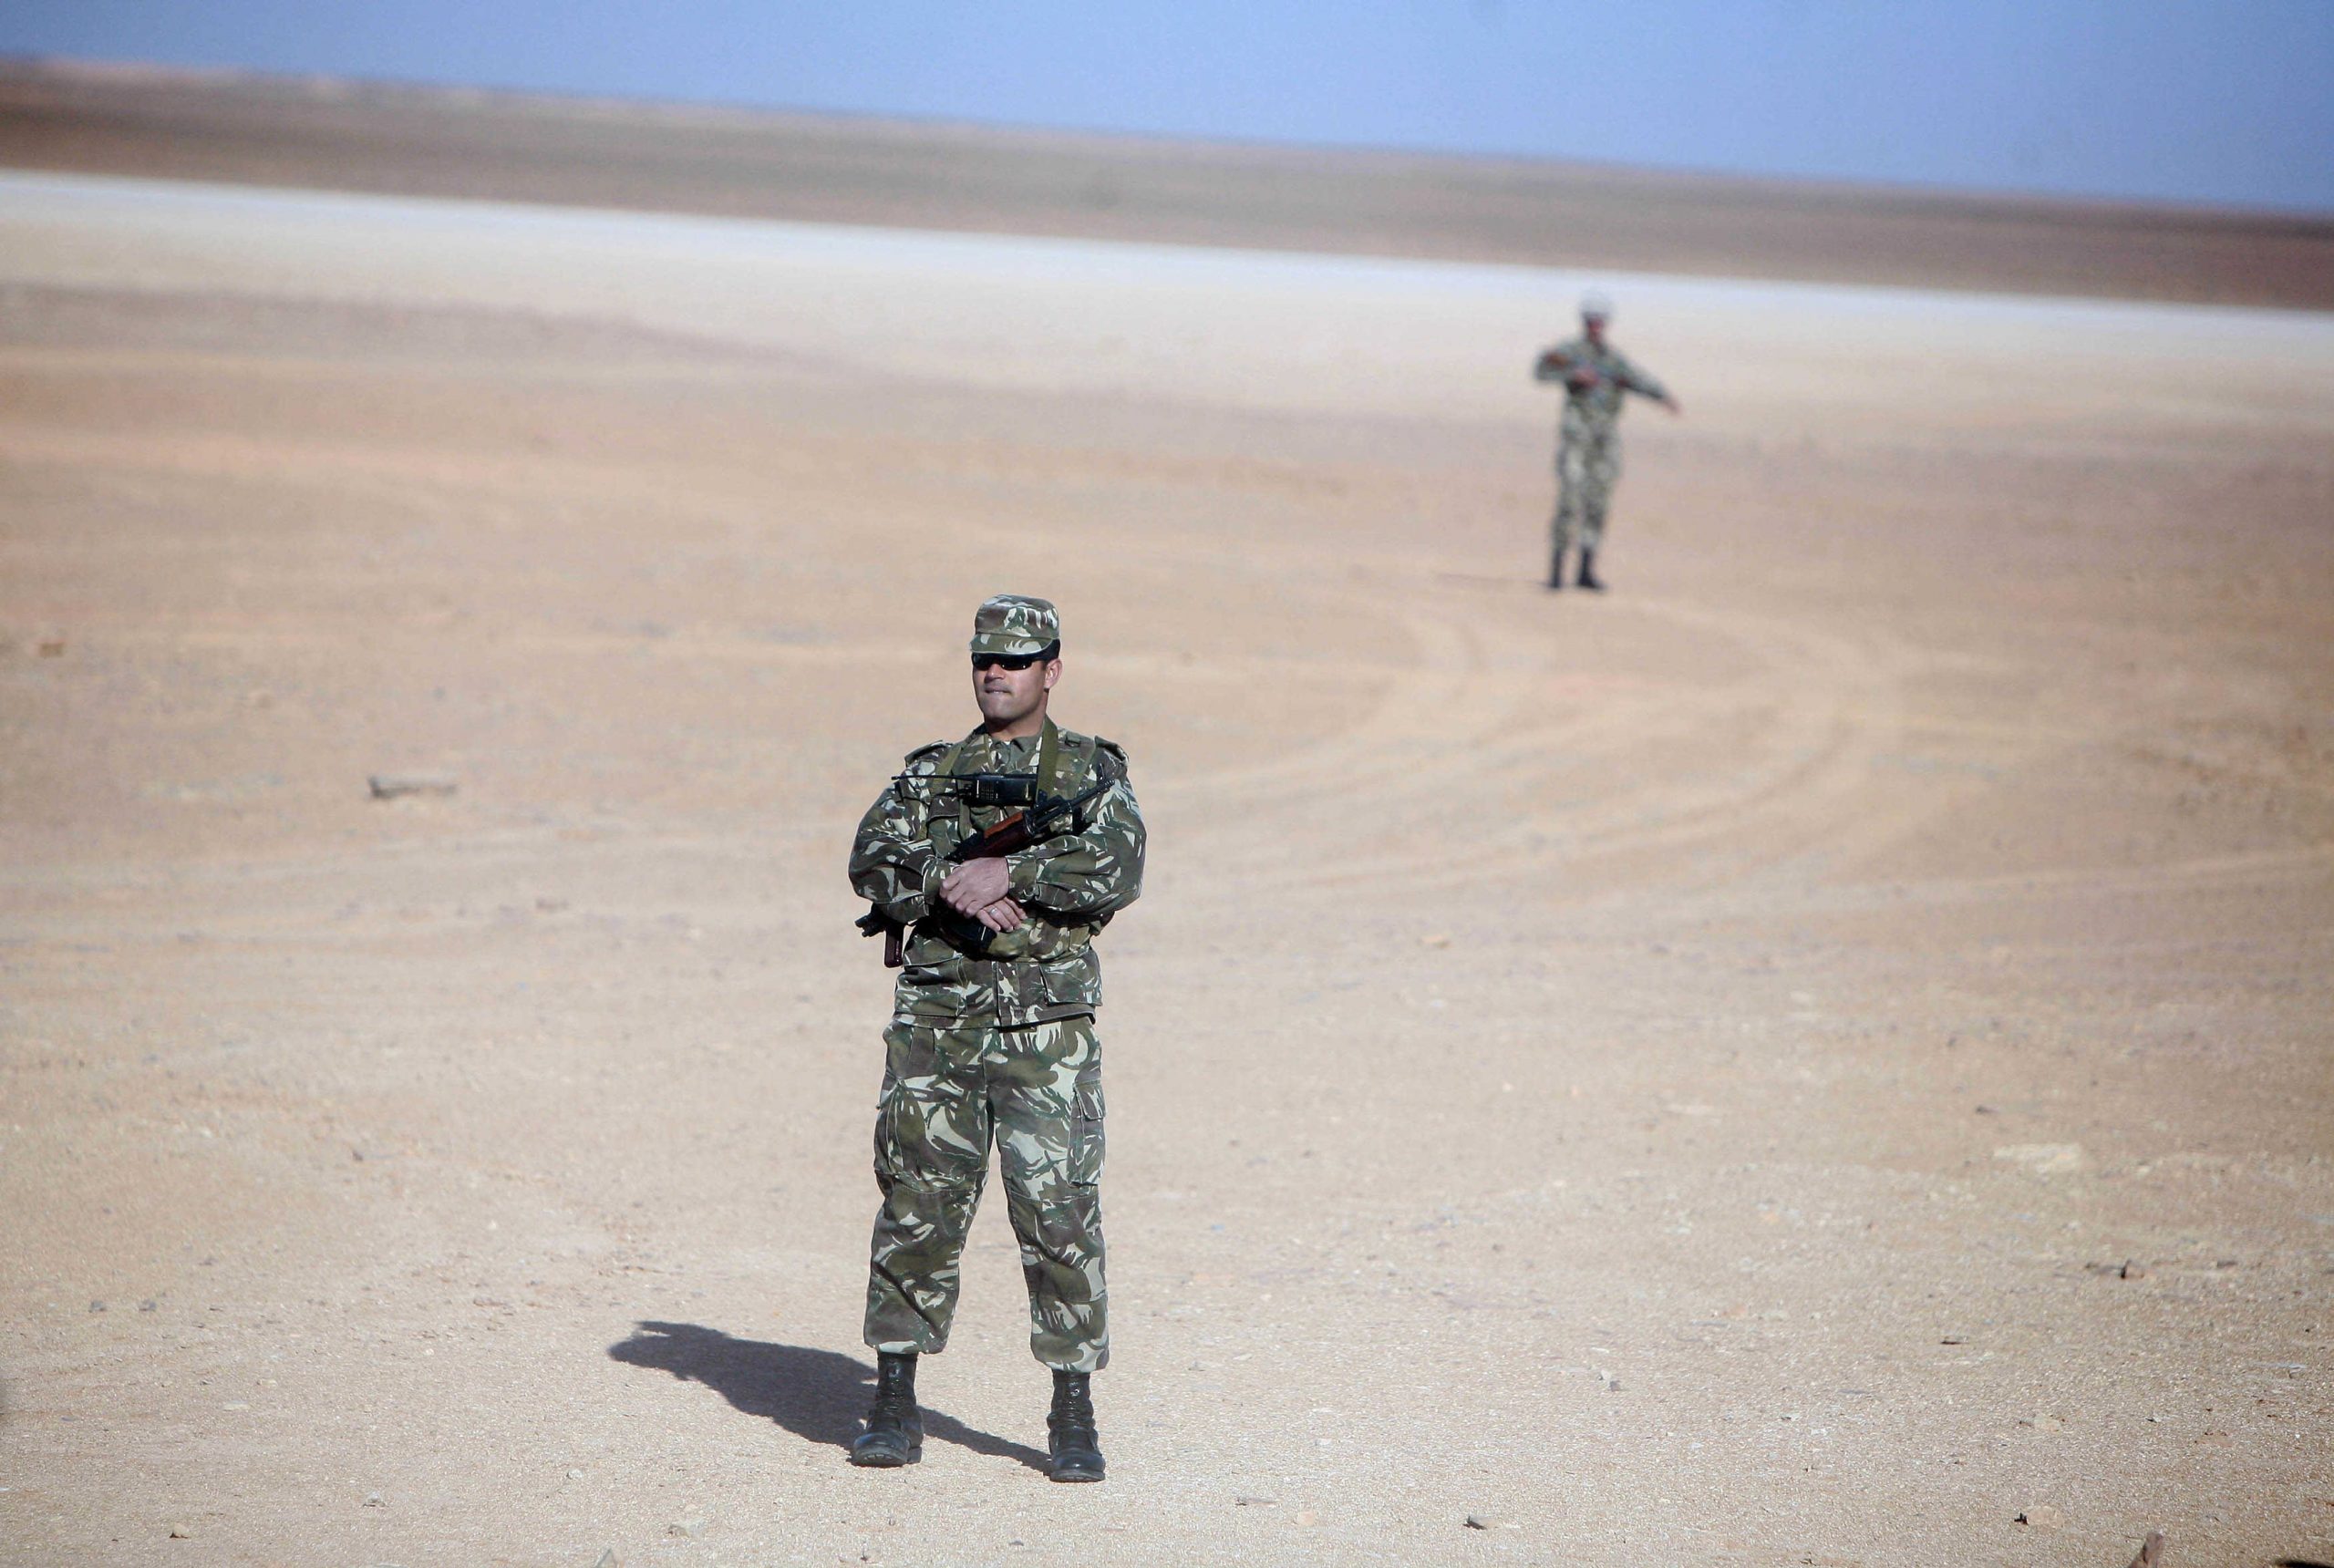 Deux soldats algériens tués dans des circonstances mystérieuses soulève plusieurs théories